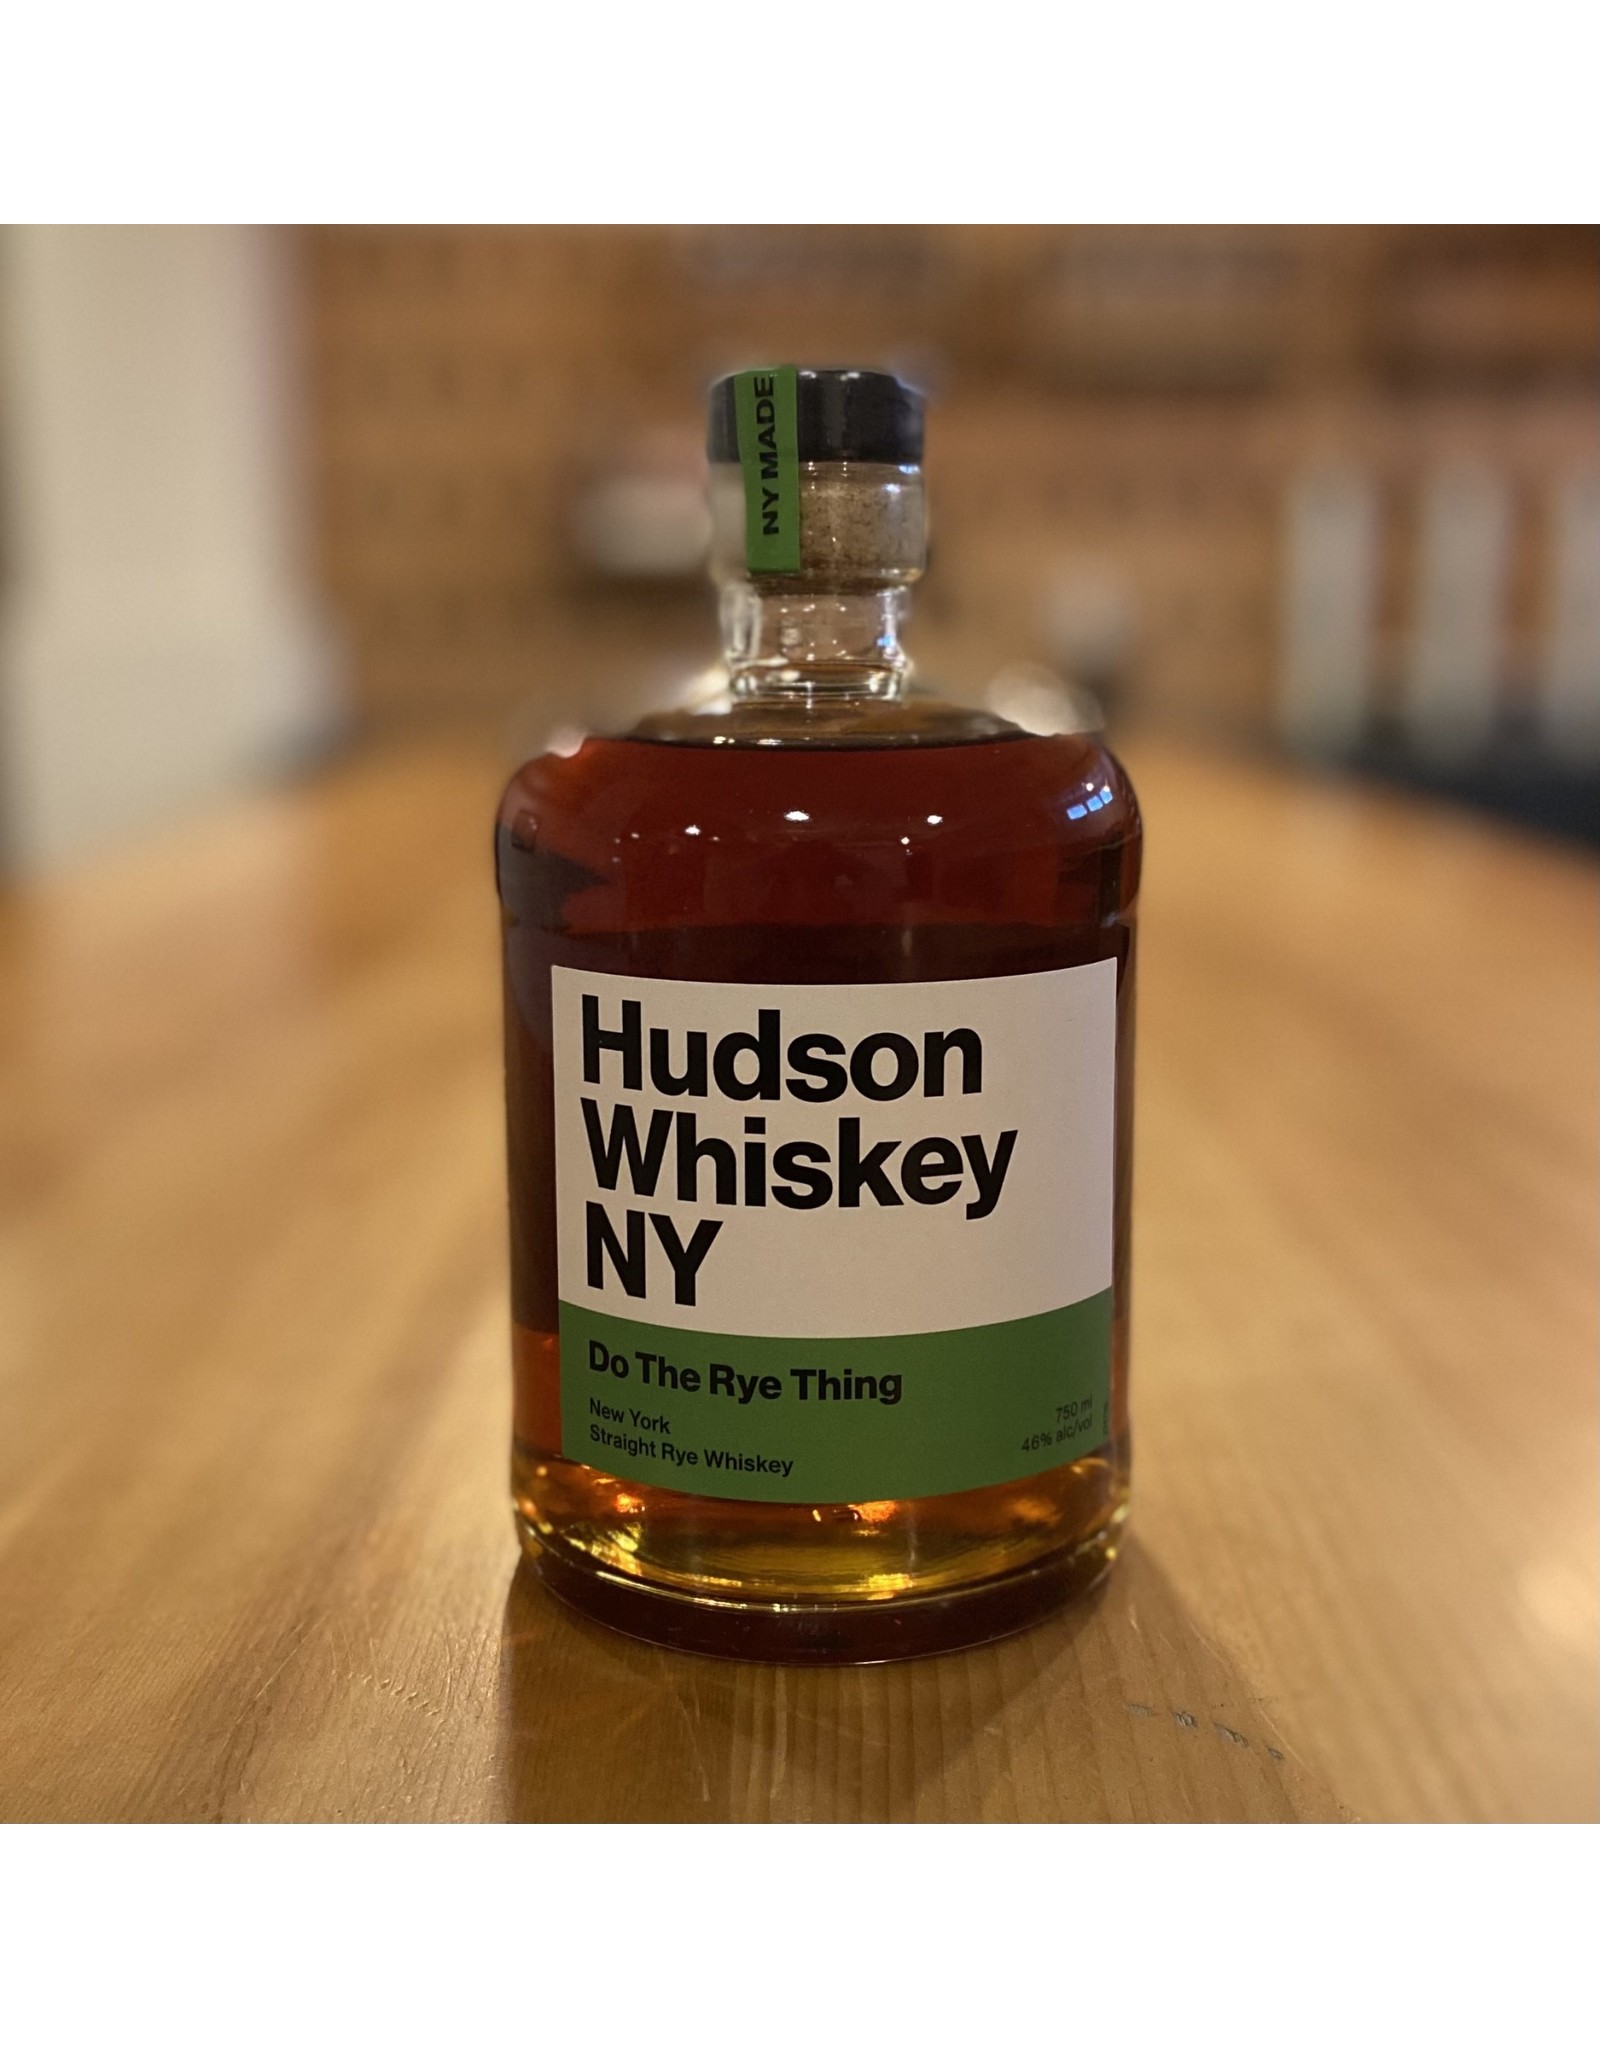 Hudson Whiskey "Do the Rye Thing" Straight Rye Whiskey - New York